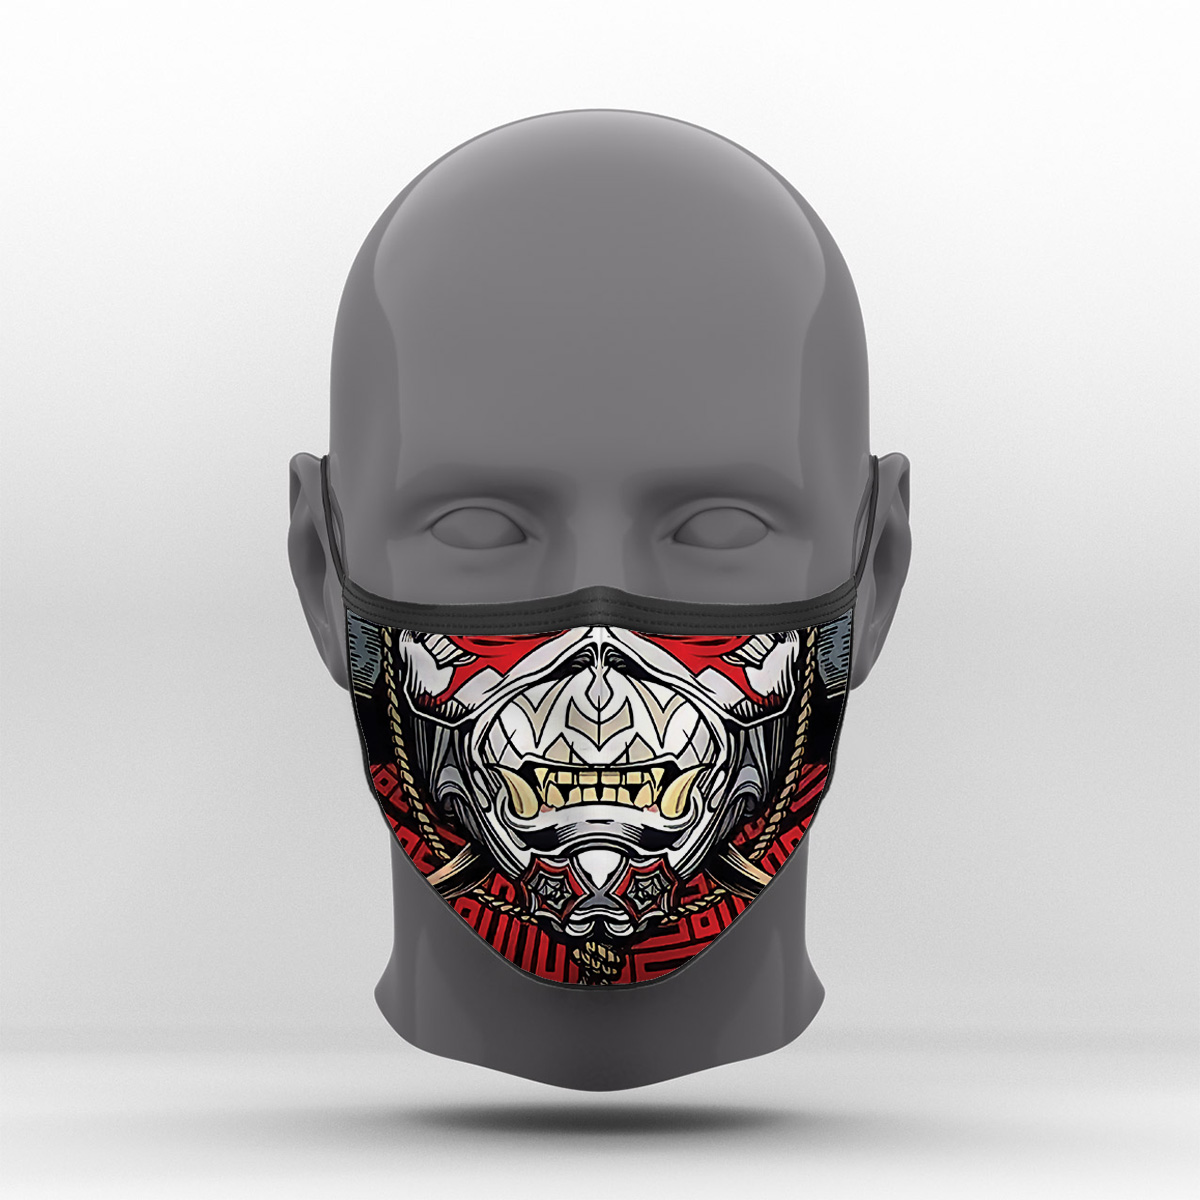 Υφασμάτινη Μάσκα Προστασίας, Iron Maiden-Senjutsu, POE-2021-3372